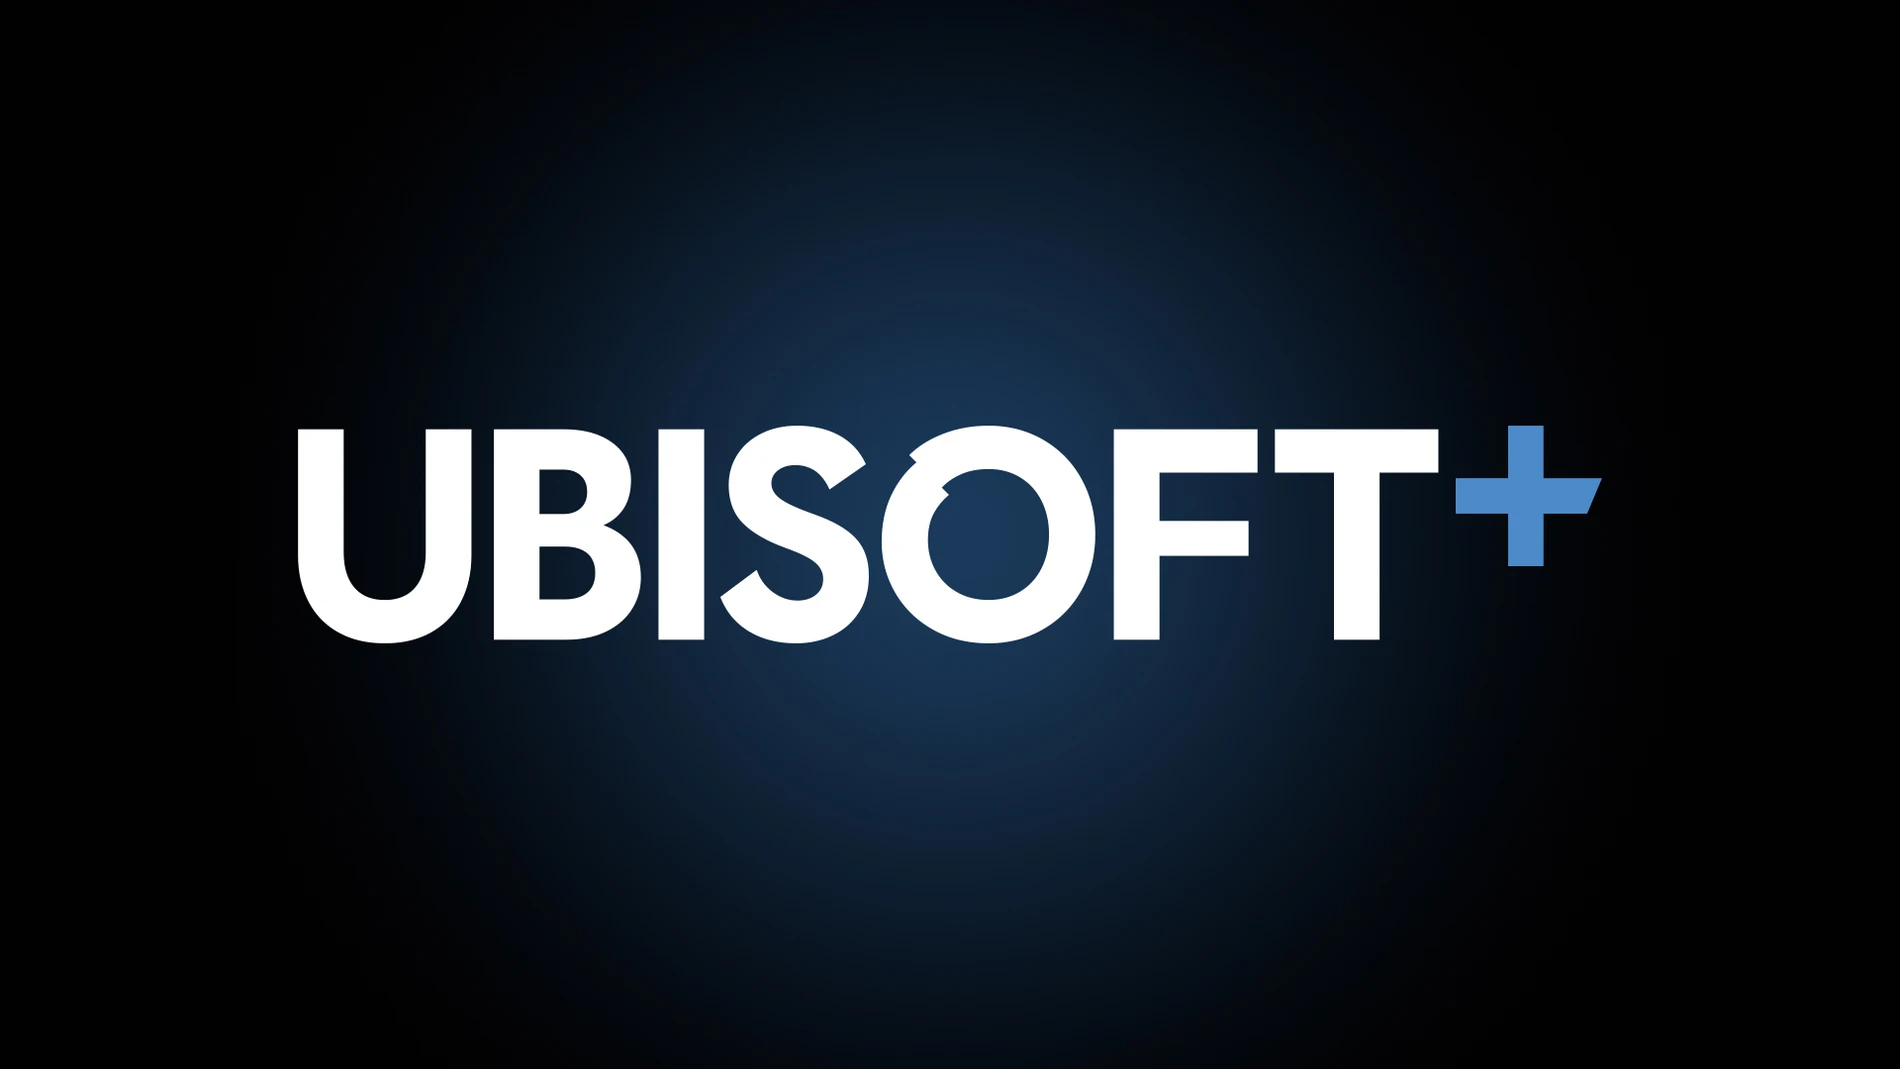 Call of Duty y demás juegos de Activision llegan al servicio de nube de Ubisoft